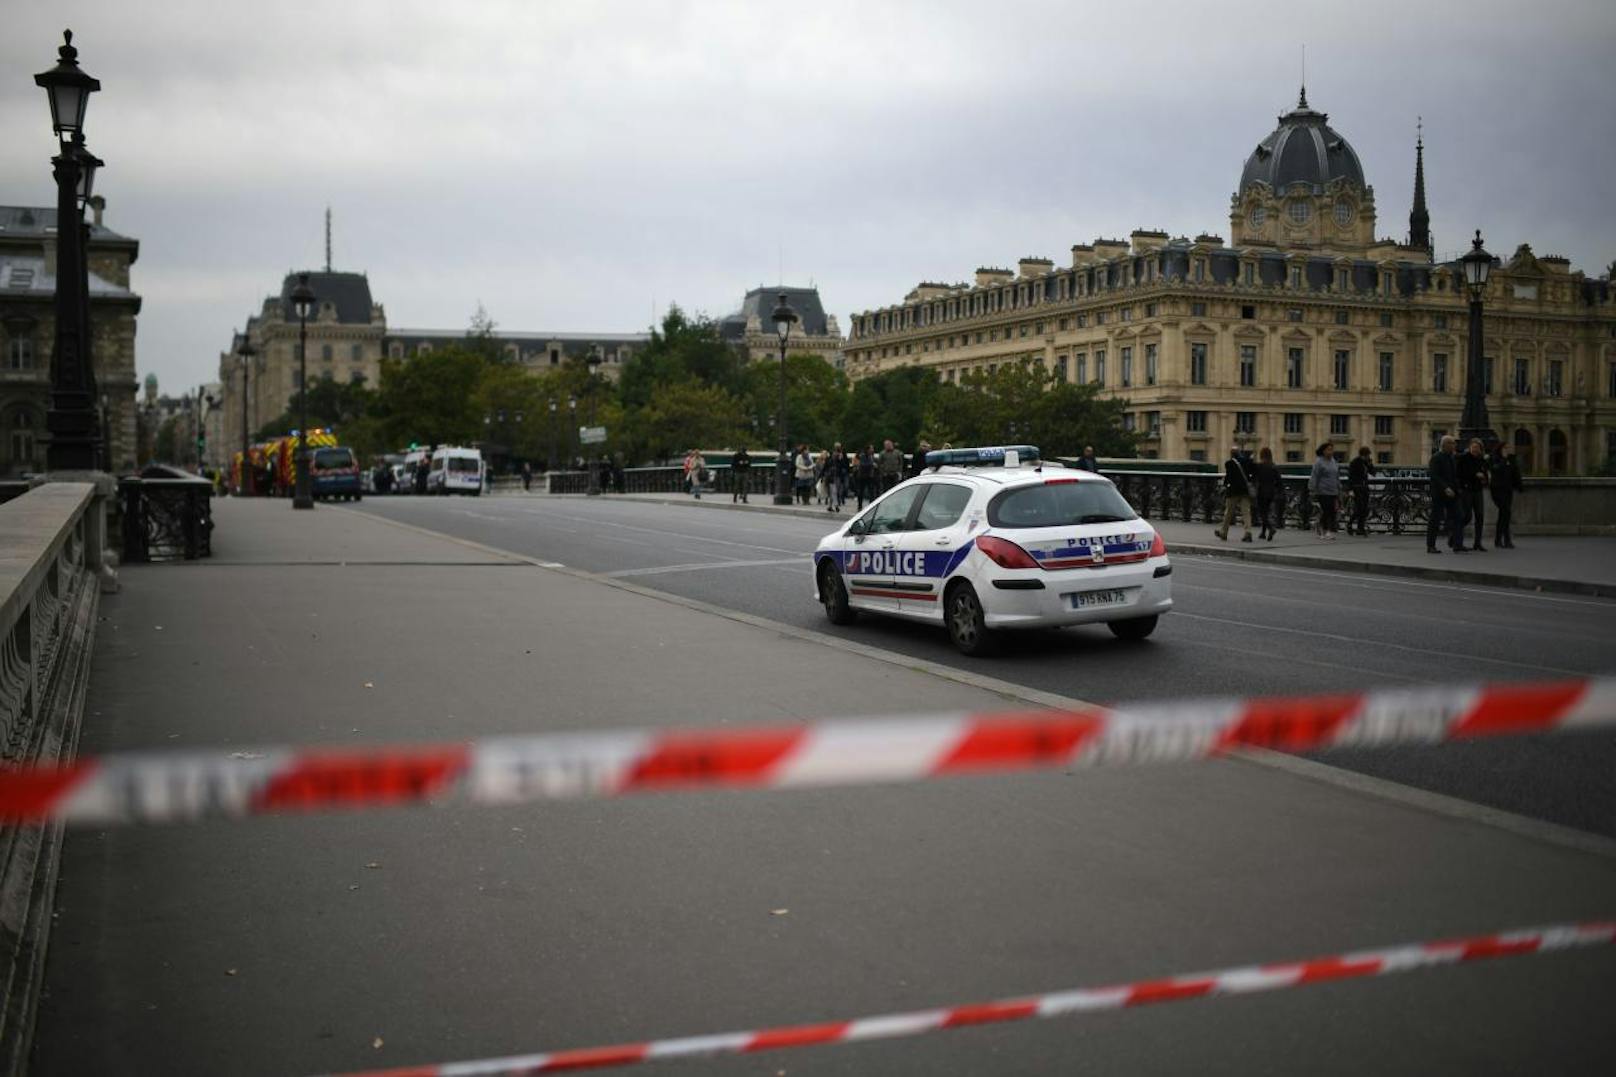 Auf einer Polizeistation in Paris hat ein Mann am Donnerstag mehrere Polizisten angegriffen.